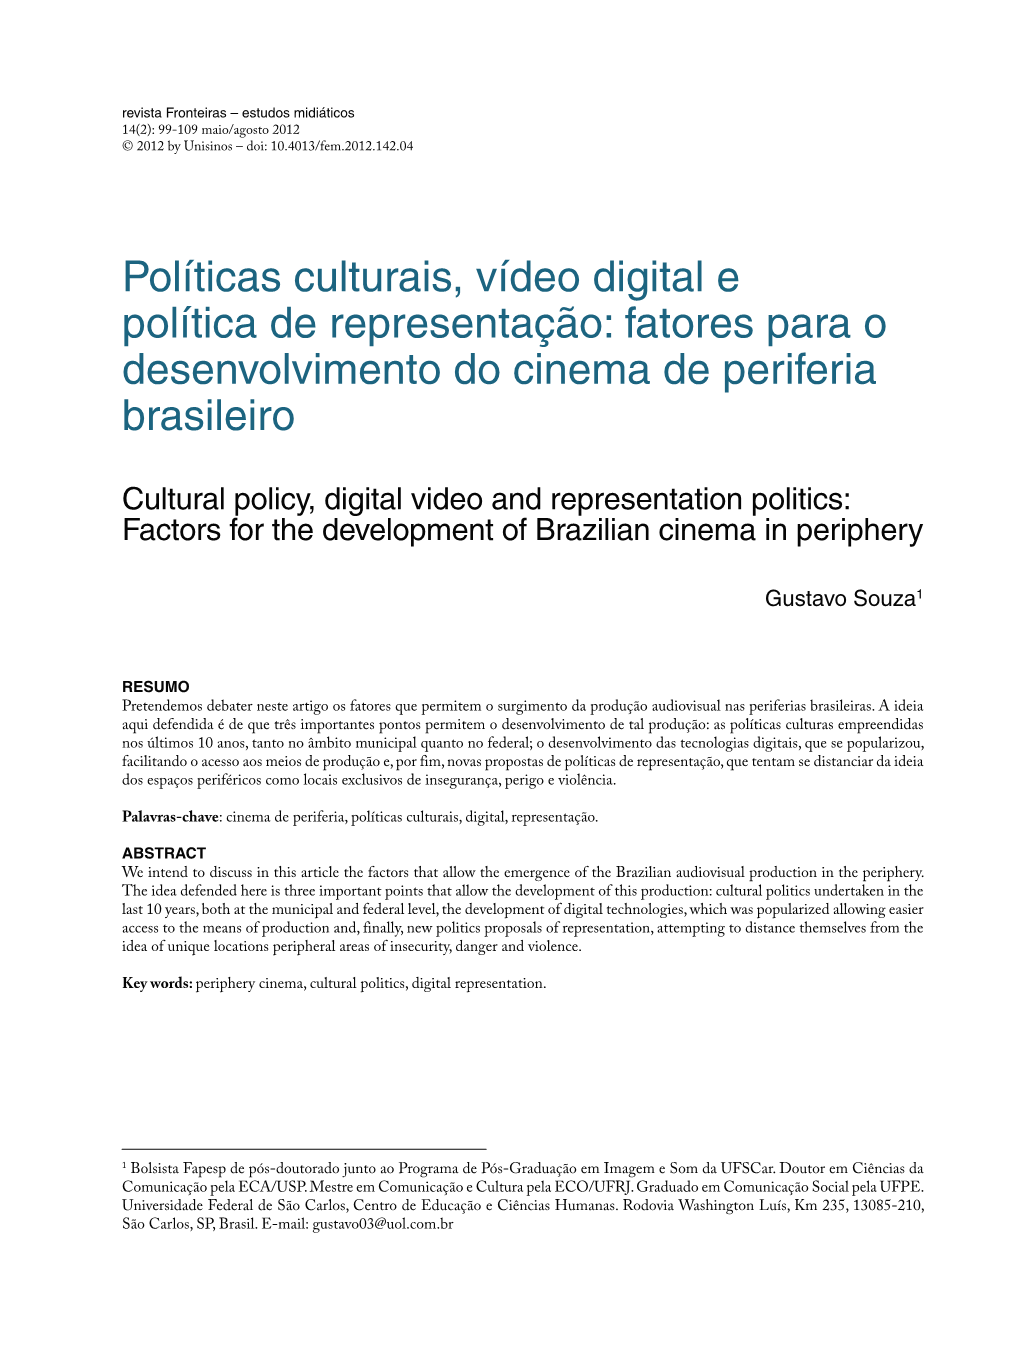 Políticas Culturais, Vídeo Digital E Política De Representação: Fatores Para O Desenvolvimento Do Cinema De Periferia Brasileiro